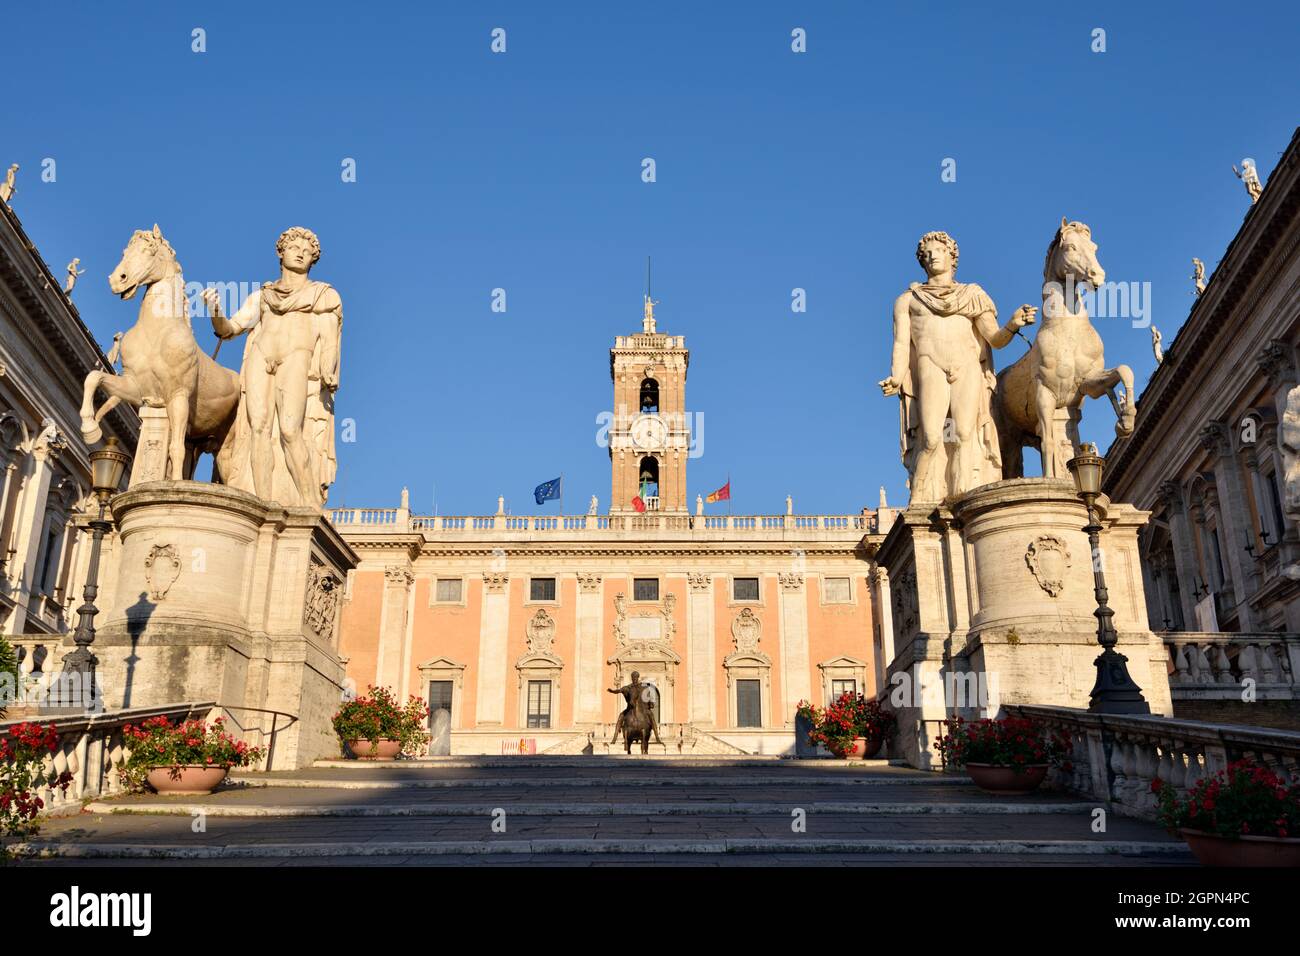 Italia, Roma, Campidoglio, Piazza del Campidoglio, statue di Castor e Pollux e Palazzo Senatorio Foto Stock